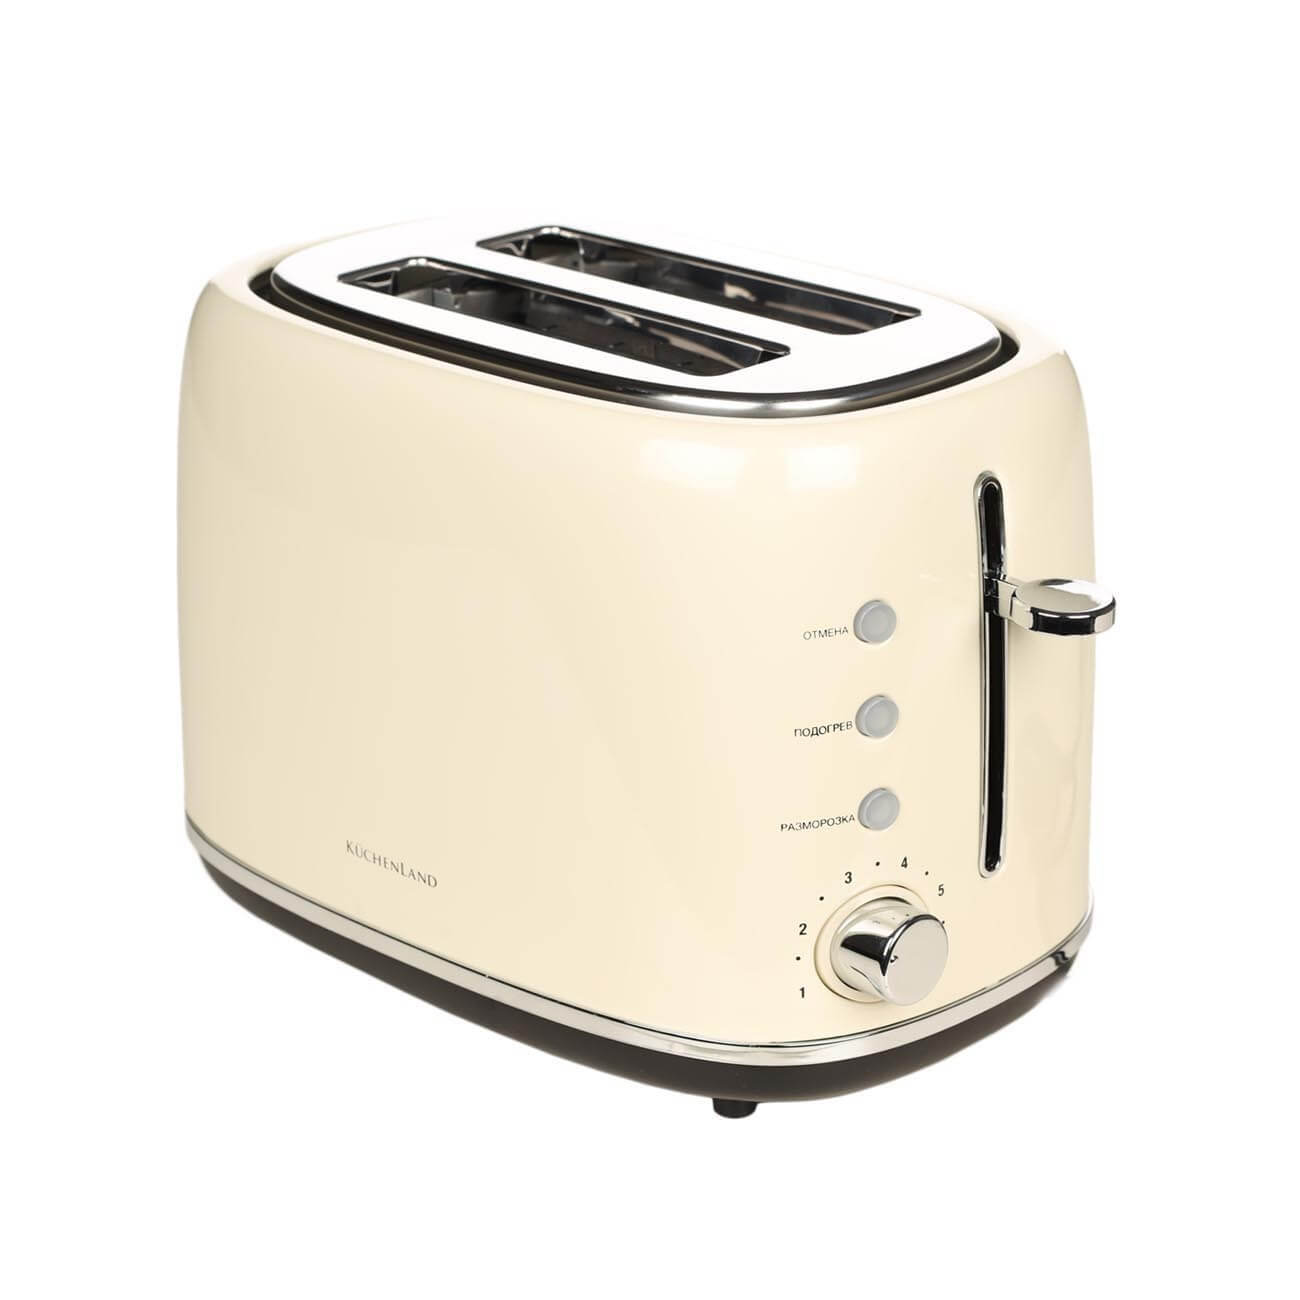 Тостер электрический, 730-870 Вт, 6 режимов, сталь/пластик, бежевый, Vintage kitchen